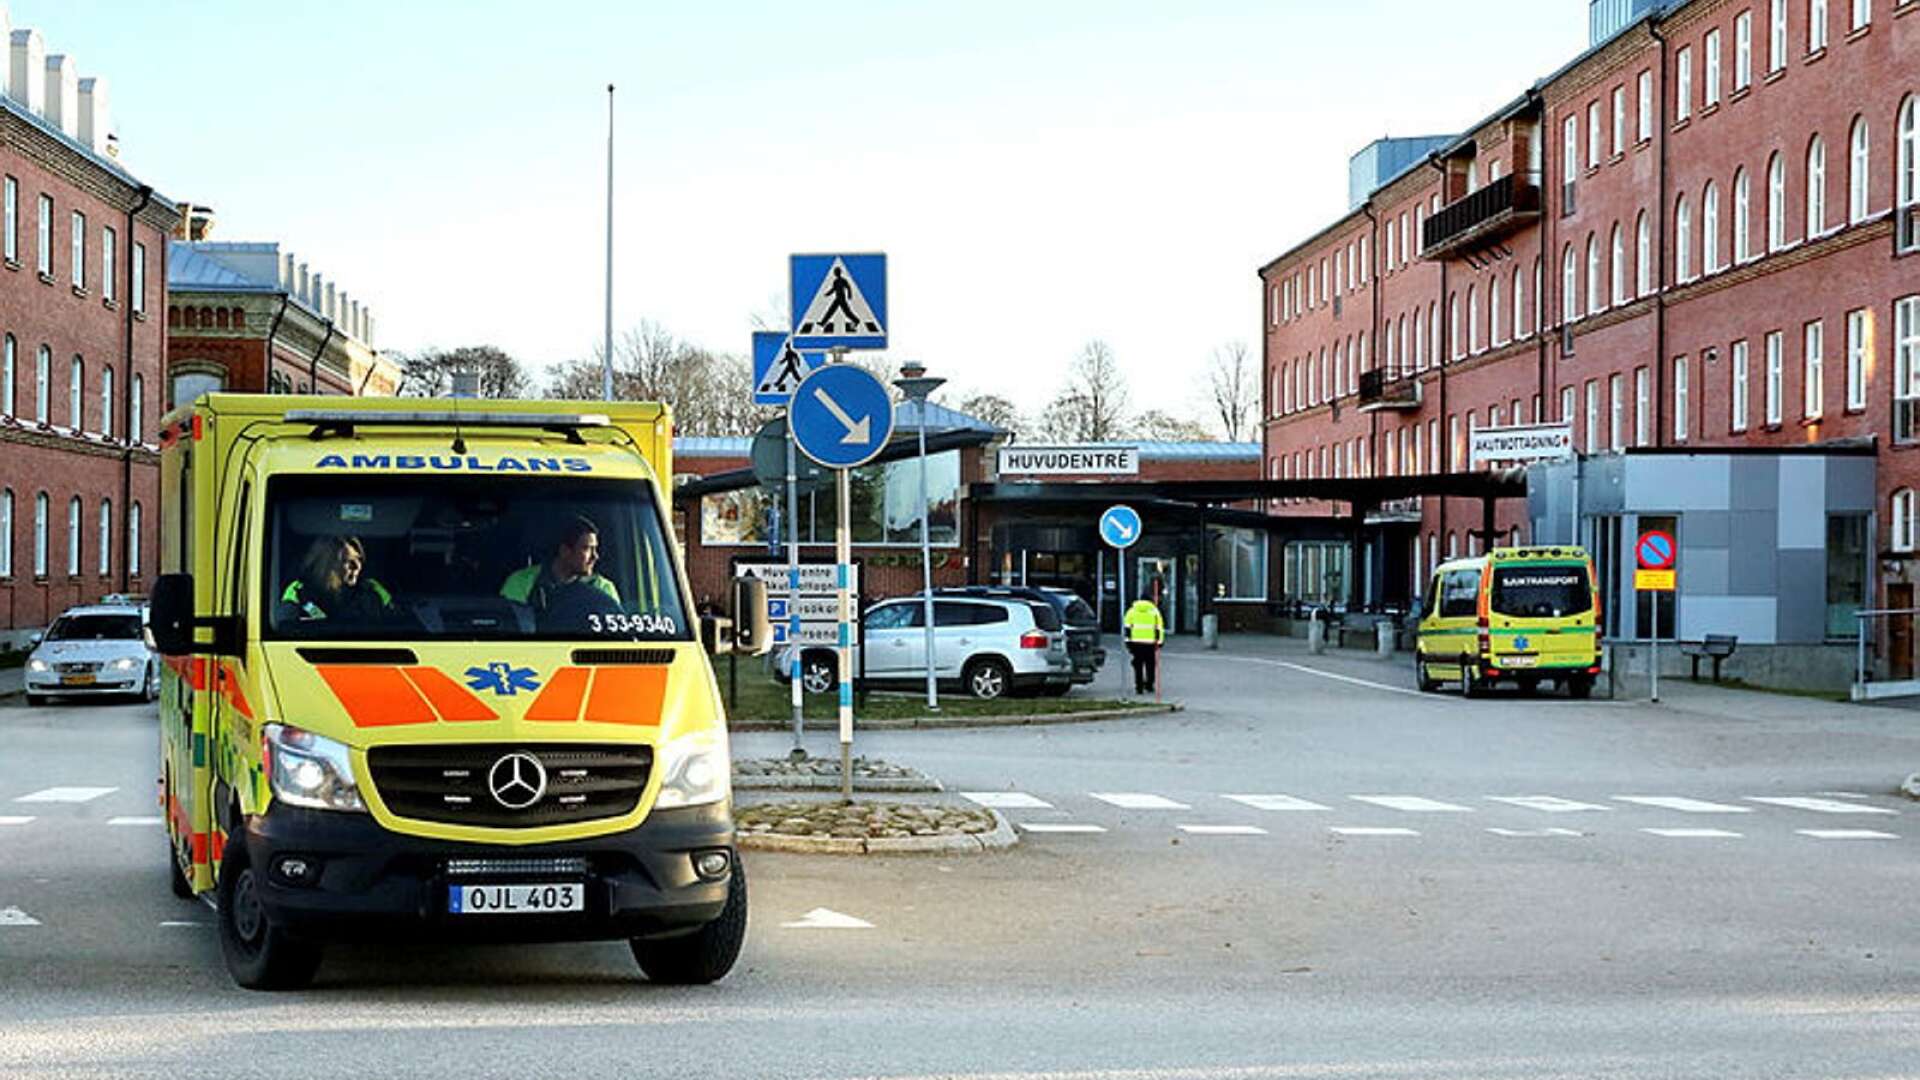 Just nu finns inga IVA-vårdplatser på sjukhuset i Lidköping. Men sjukhusledningen lovar att de öppnas igen när det lugnat sig med pandemin.